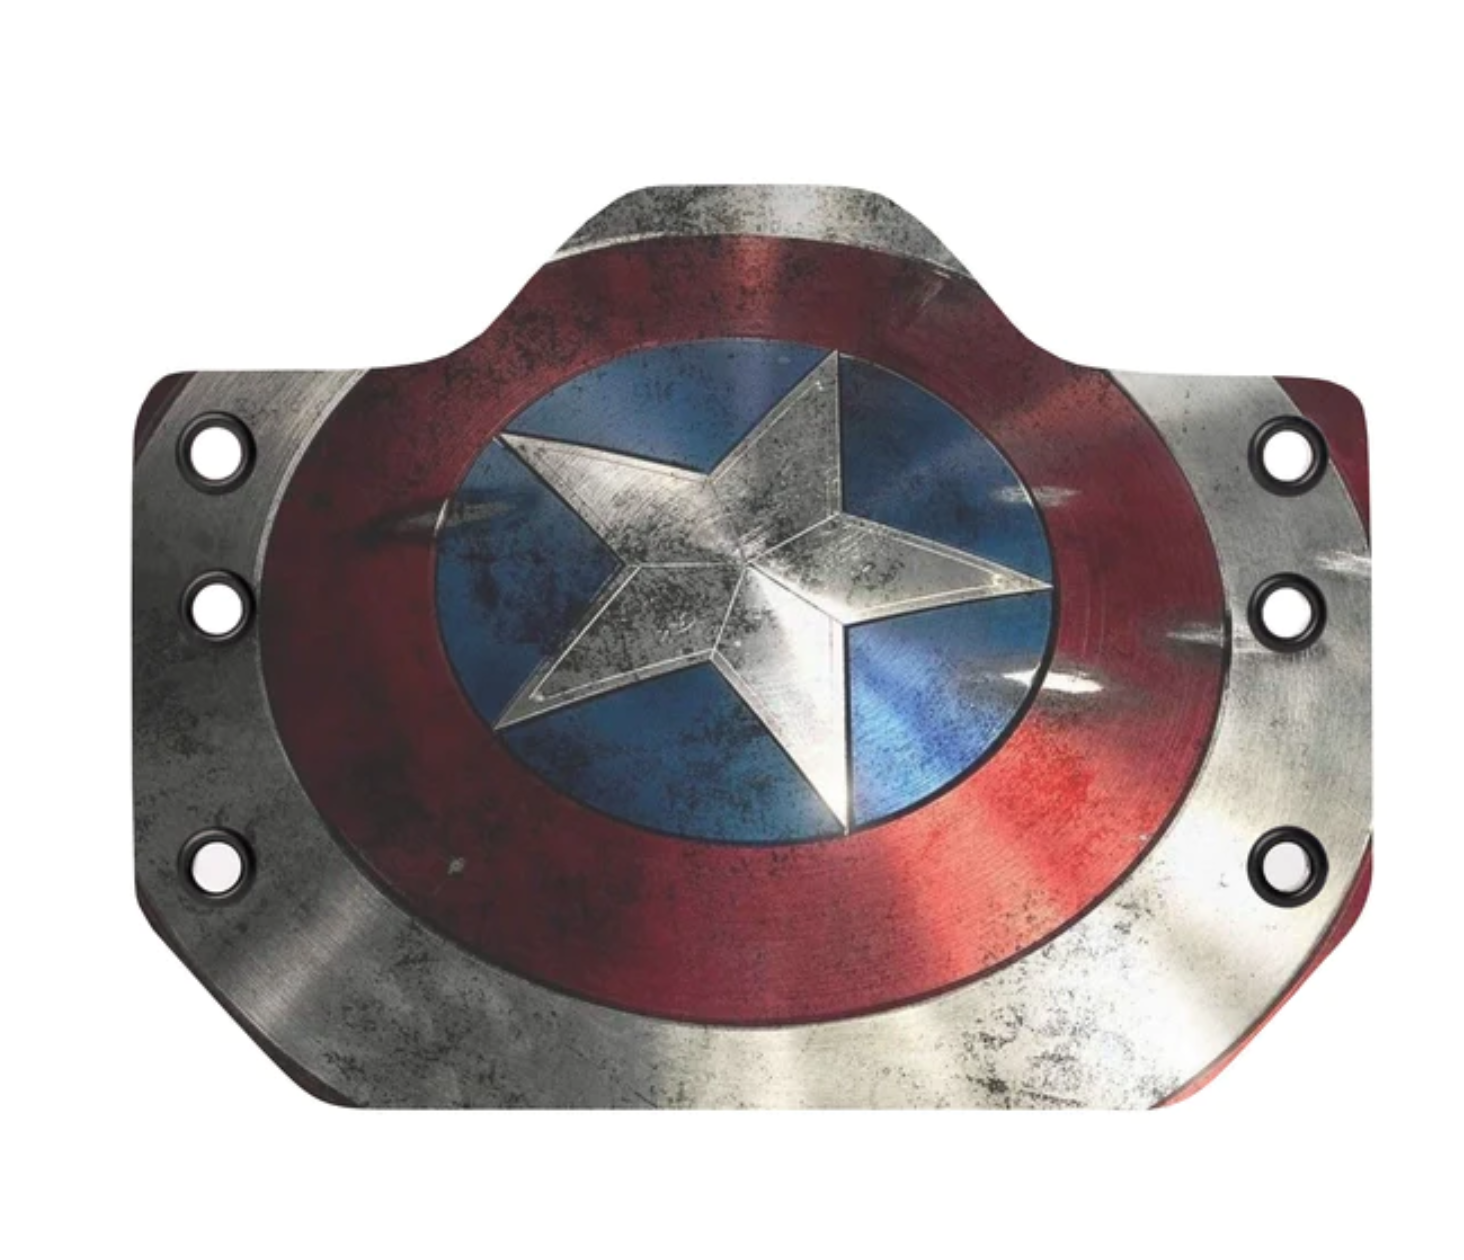 Bullseye OWB Holster Captain America Shield.